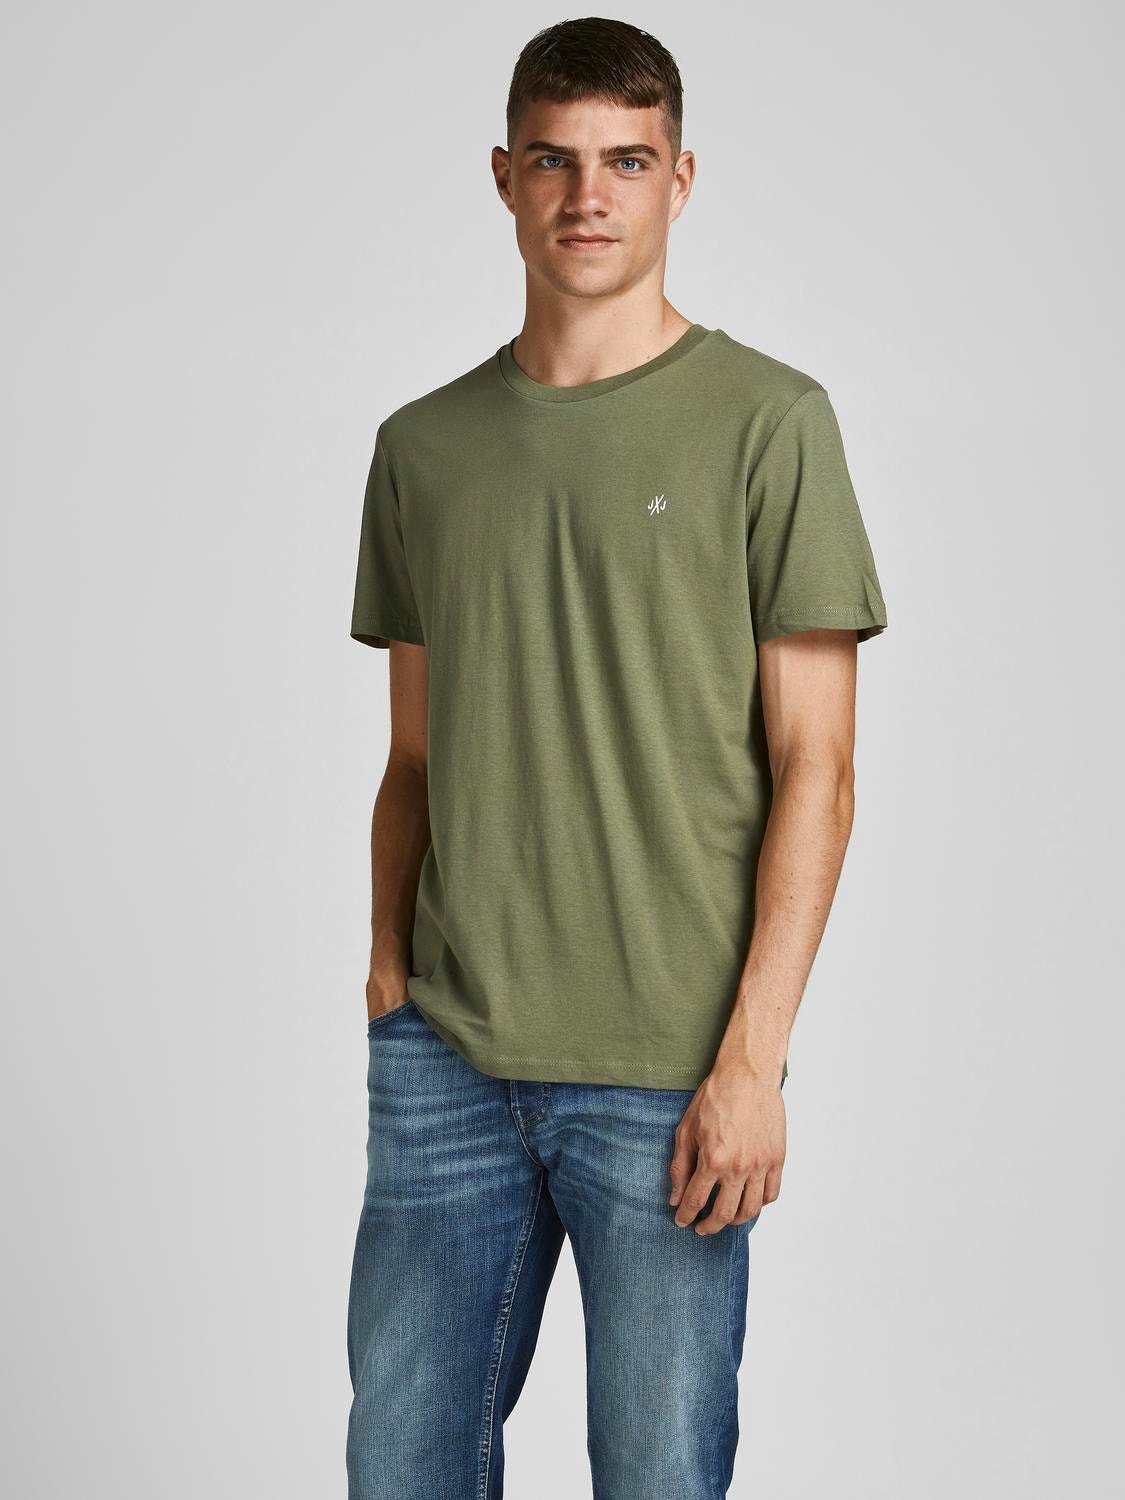 Jack & Jones Confezione da 5 T-shirt Con logo Girocollo -Multi - 12185714